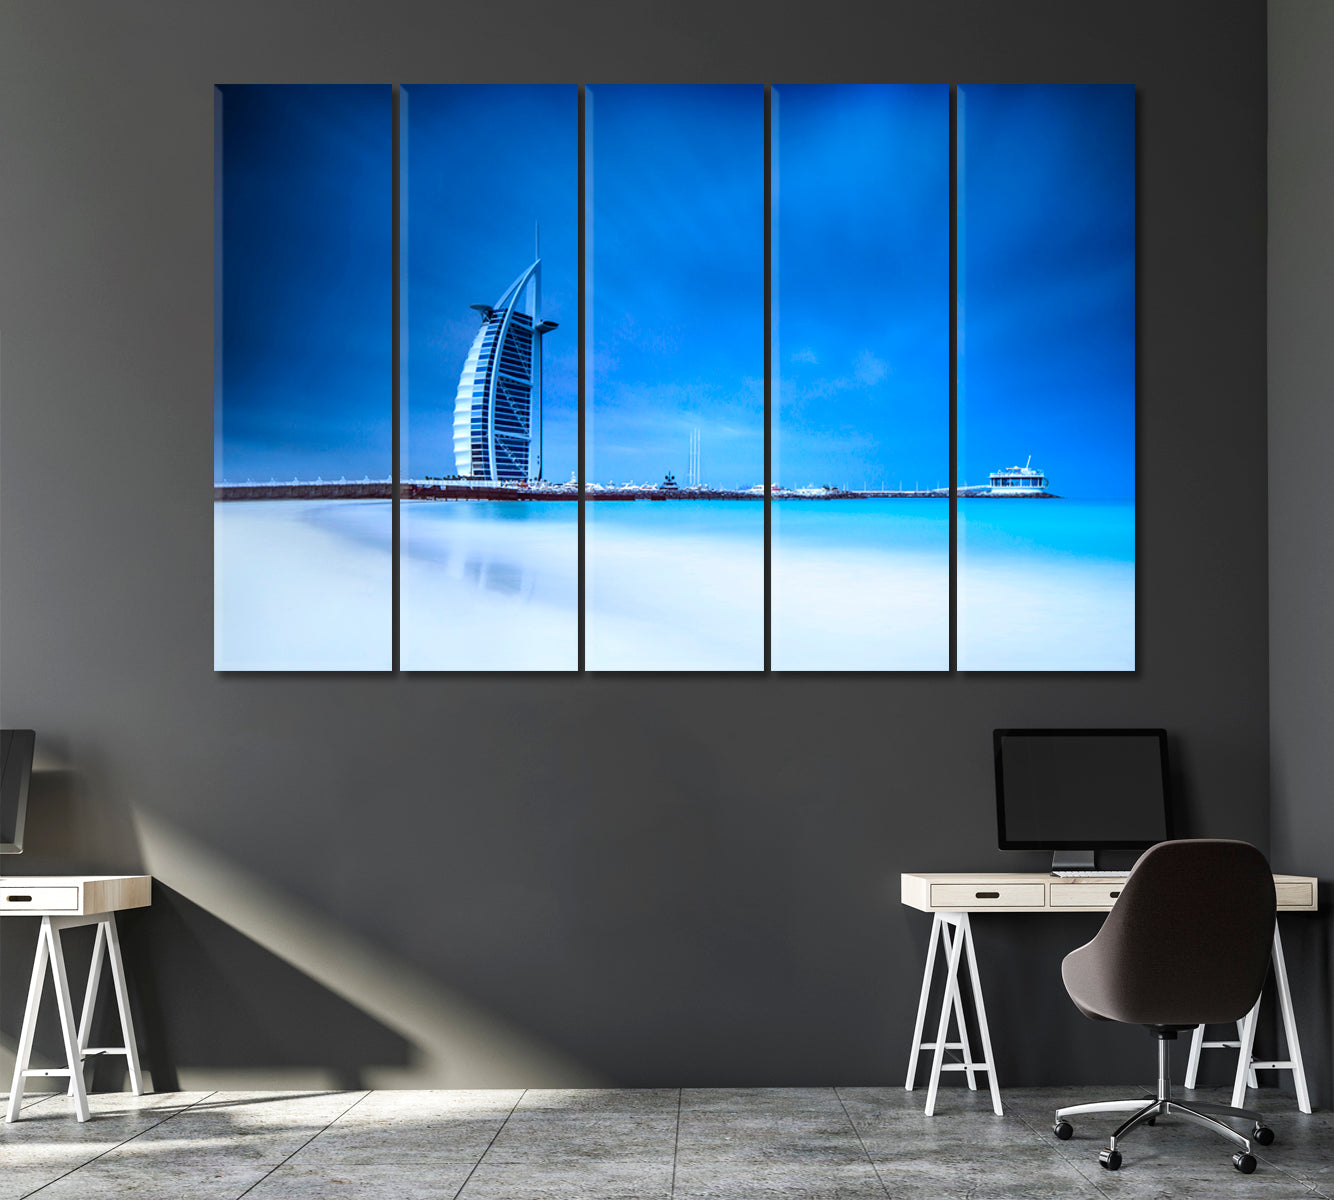 Burj Al Arab Jumeirah Dubai Canvas Print ArtLexy 5 Panels 36"x24" inches 